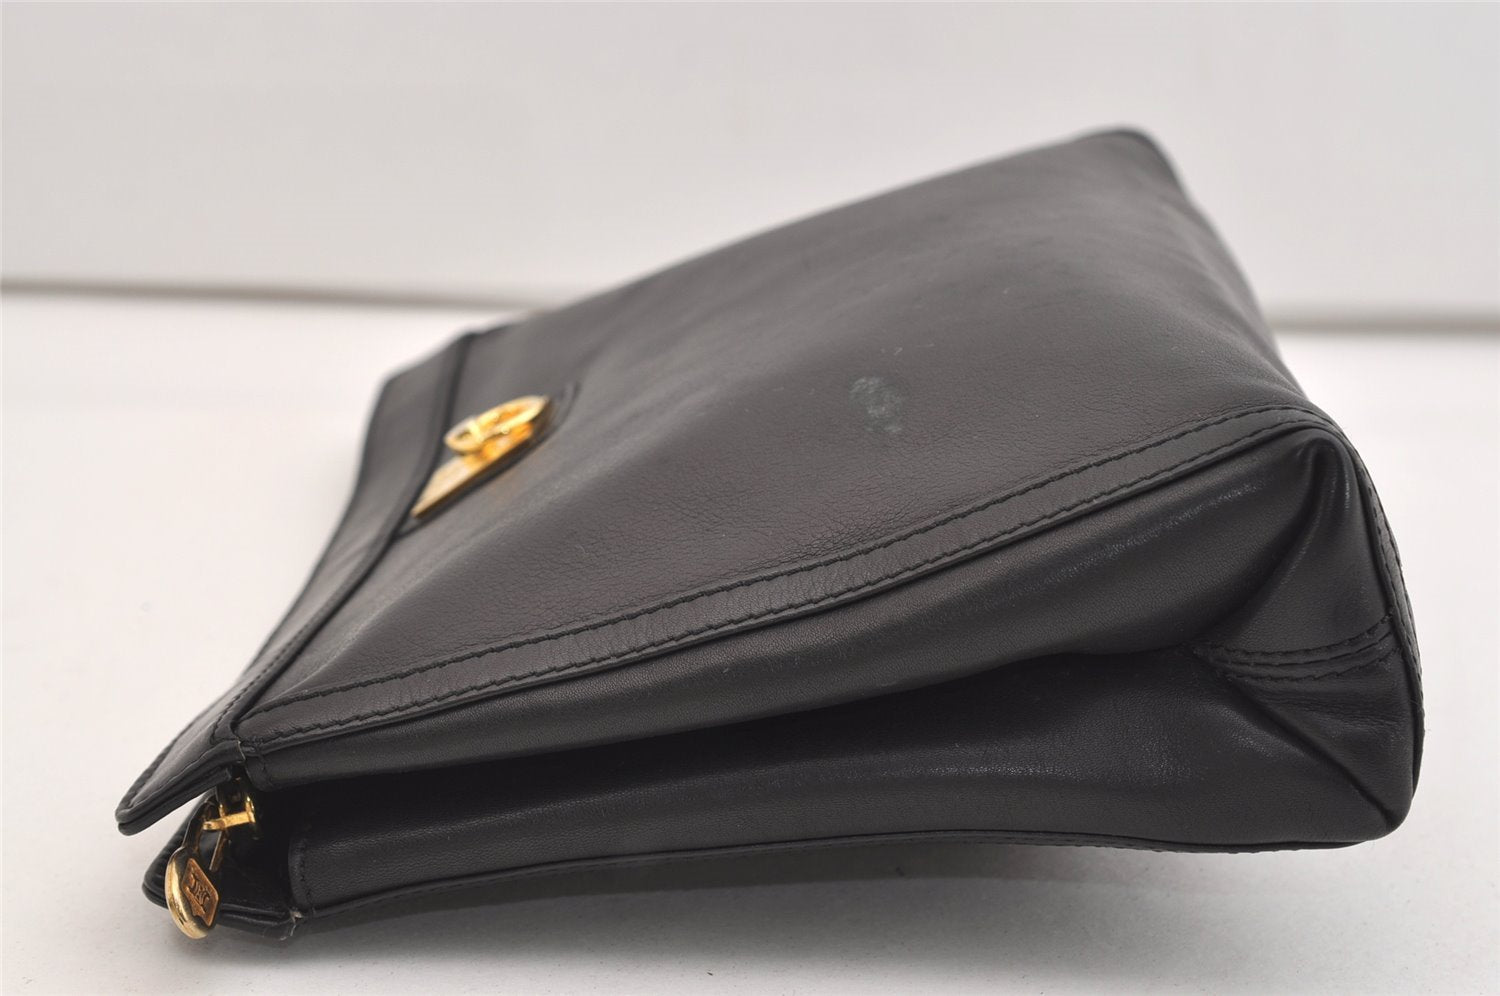 Authentic CELINE Vintage Clutch Hand Bag Purse Leather Black 5131J